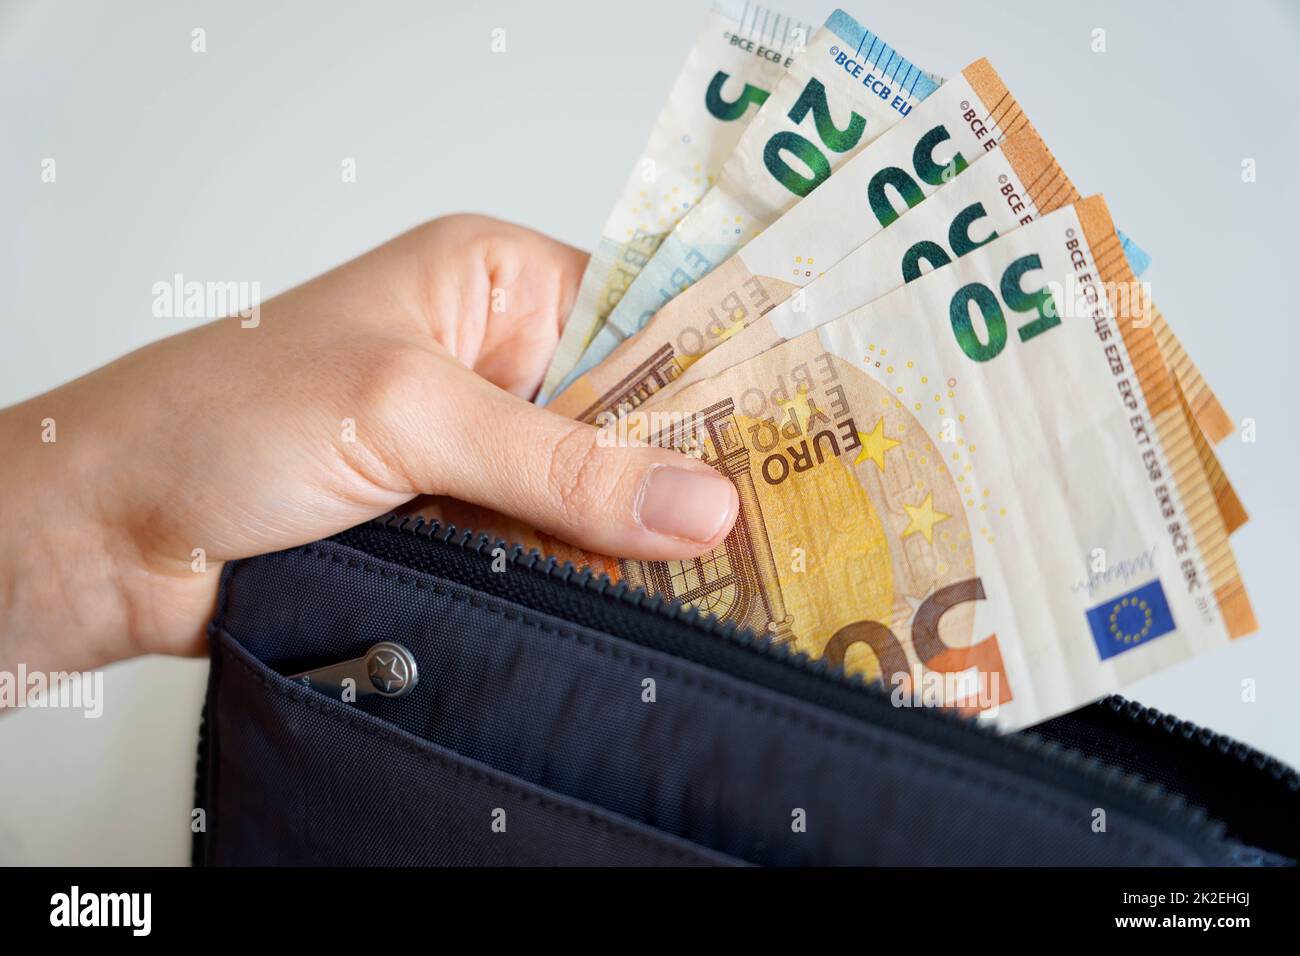 Aumento dei prezzi. Prelievo manuale di banconote in euro dal portafoglio. Recessione. Crisi finanziaria. Foto Stock